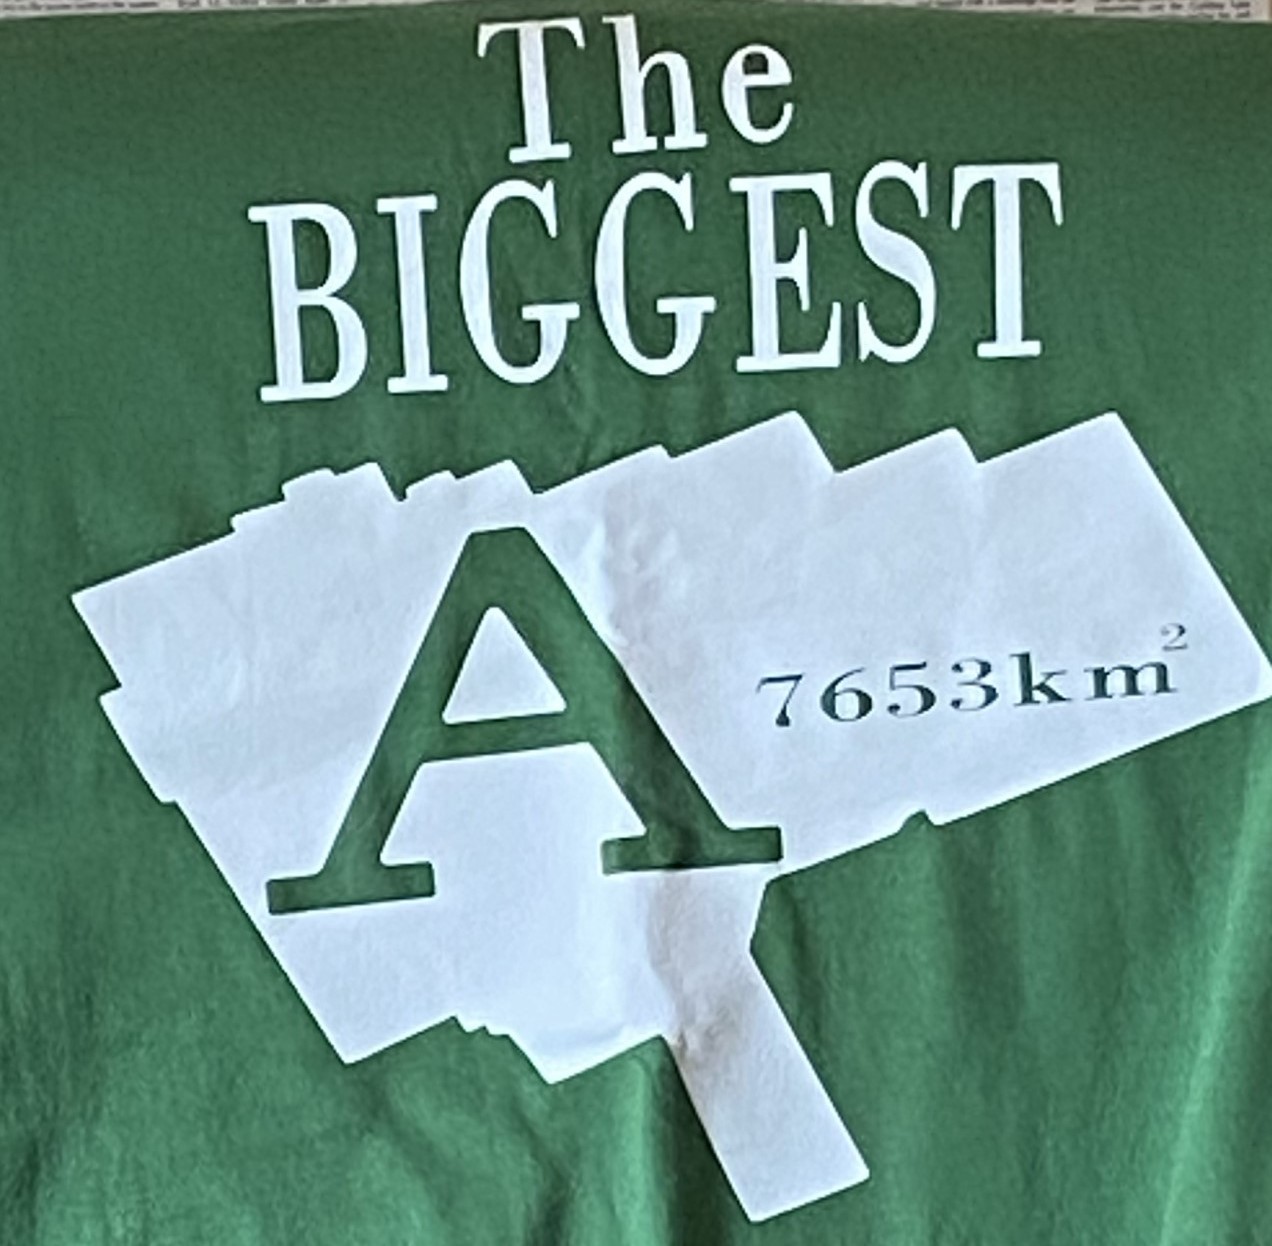 Un t-shirt vert avec « The biggest A » (Le plus grand A) et une carte du parc Algonquin imprimée en blanc dessus.